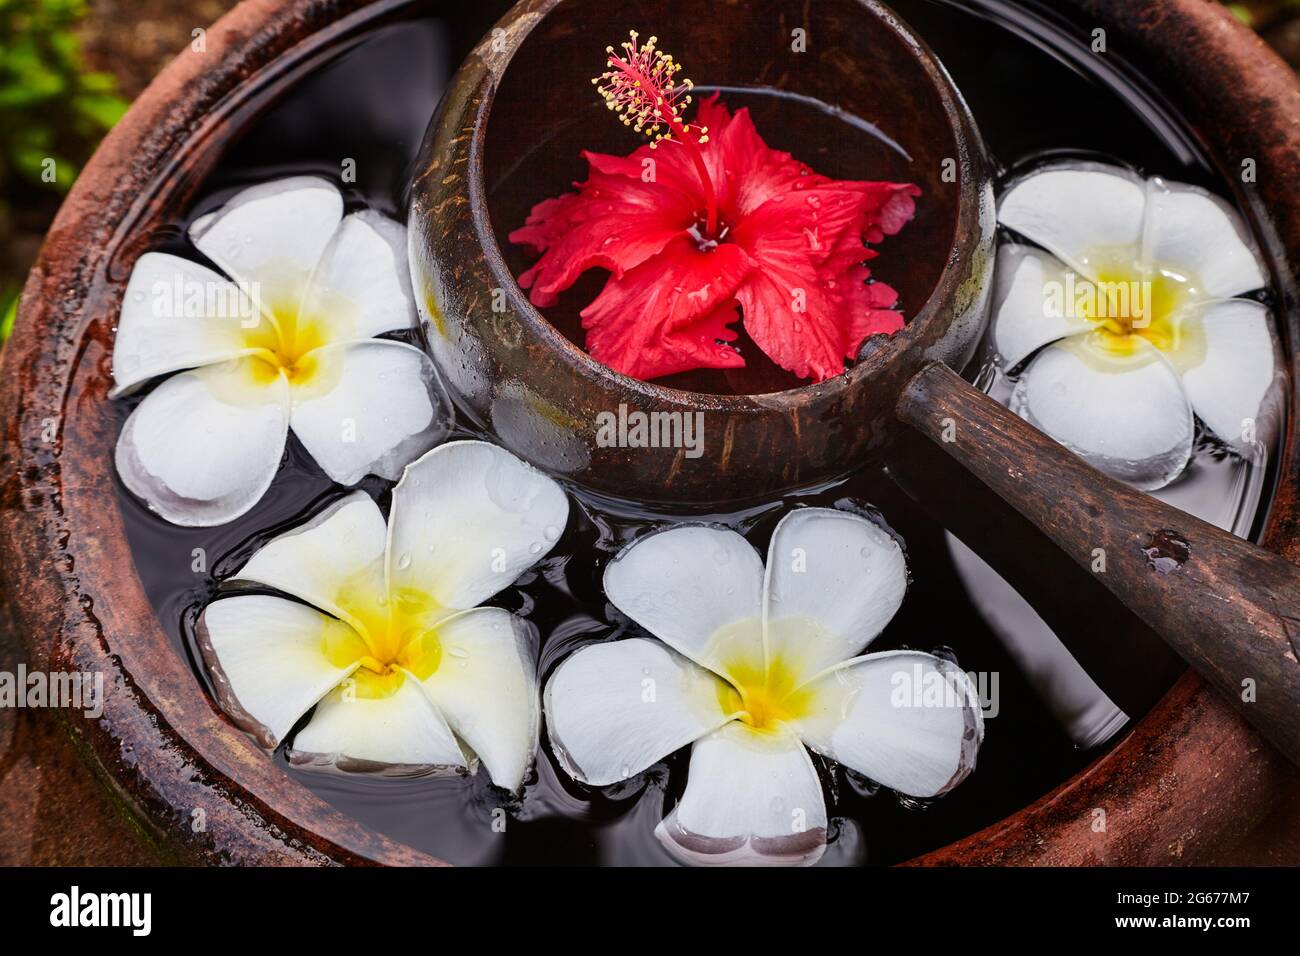 Vasija de cerámica llenos de agua con una cuchara de madera y flores. Foto de stock